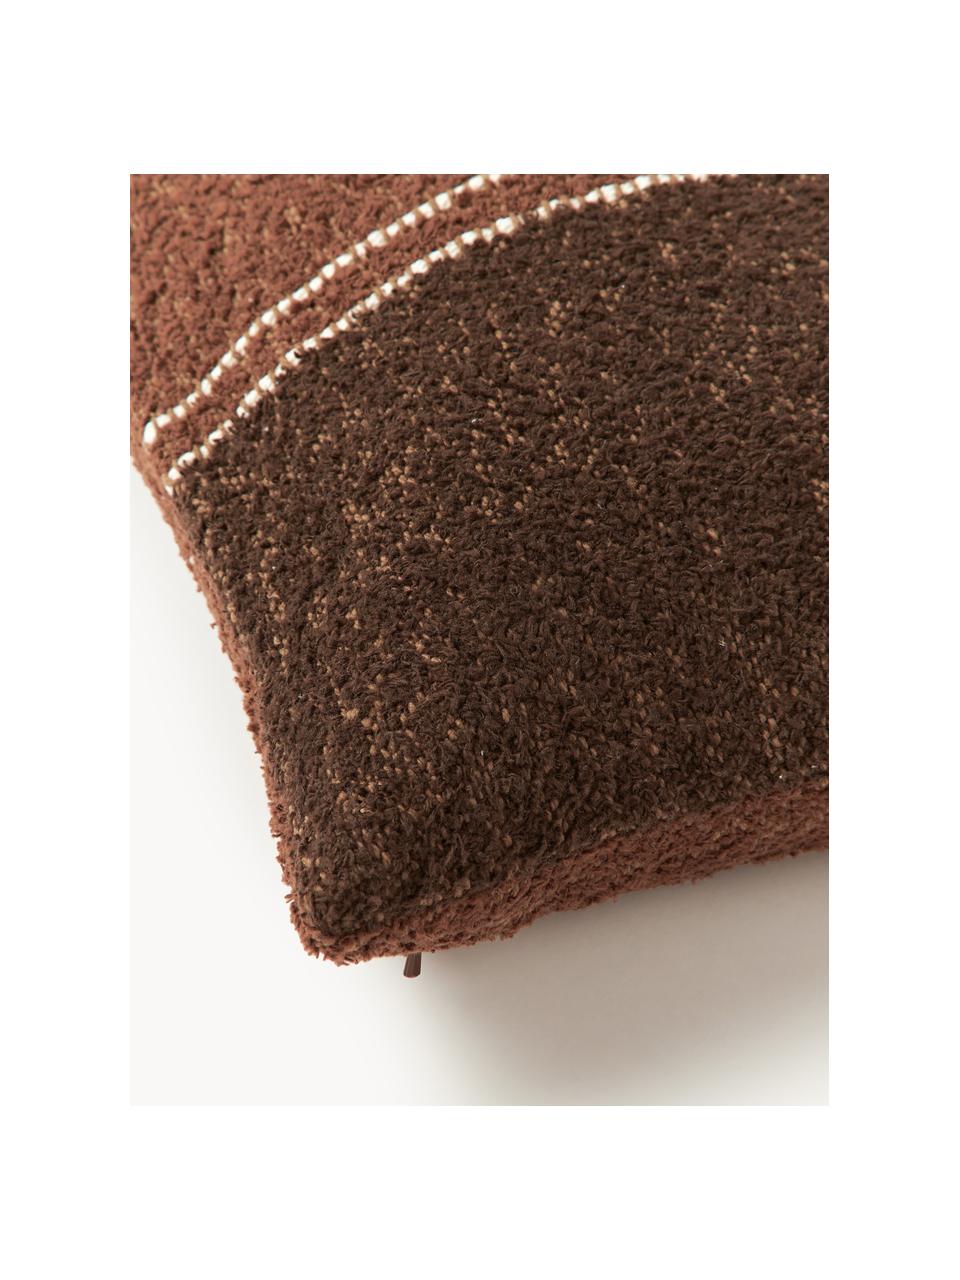 Housse de coussin 30x50 bouclé Lago, En tissu bouclé (100 % coton)

Le bouclé est un matériau qui se caractérise par sa structure incurvée irrégulière. La surface caractéristique est créée par des boucles tissées de fils de différents types, qui confèrent au tissu une structure unique. La structure bouclée a un effet à la fois isolant et moelleux, ce qui rend le tissu particulièrement douillet, Tons bruns, blanc, larg. 30 x long. 50 cm